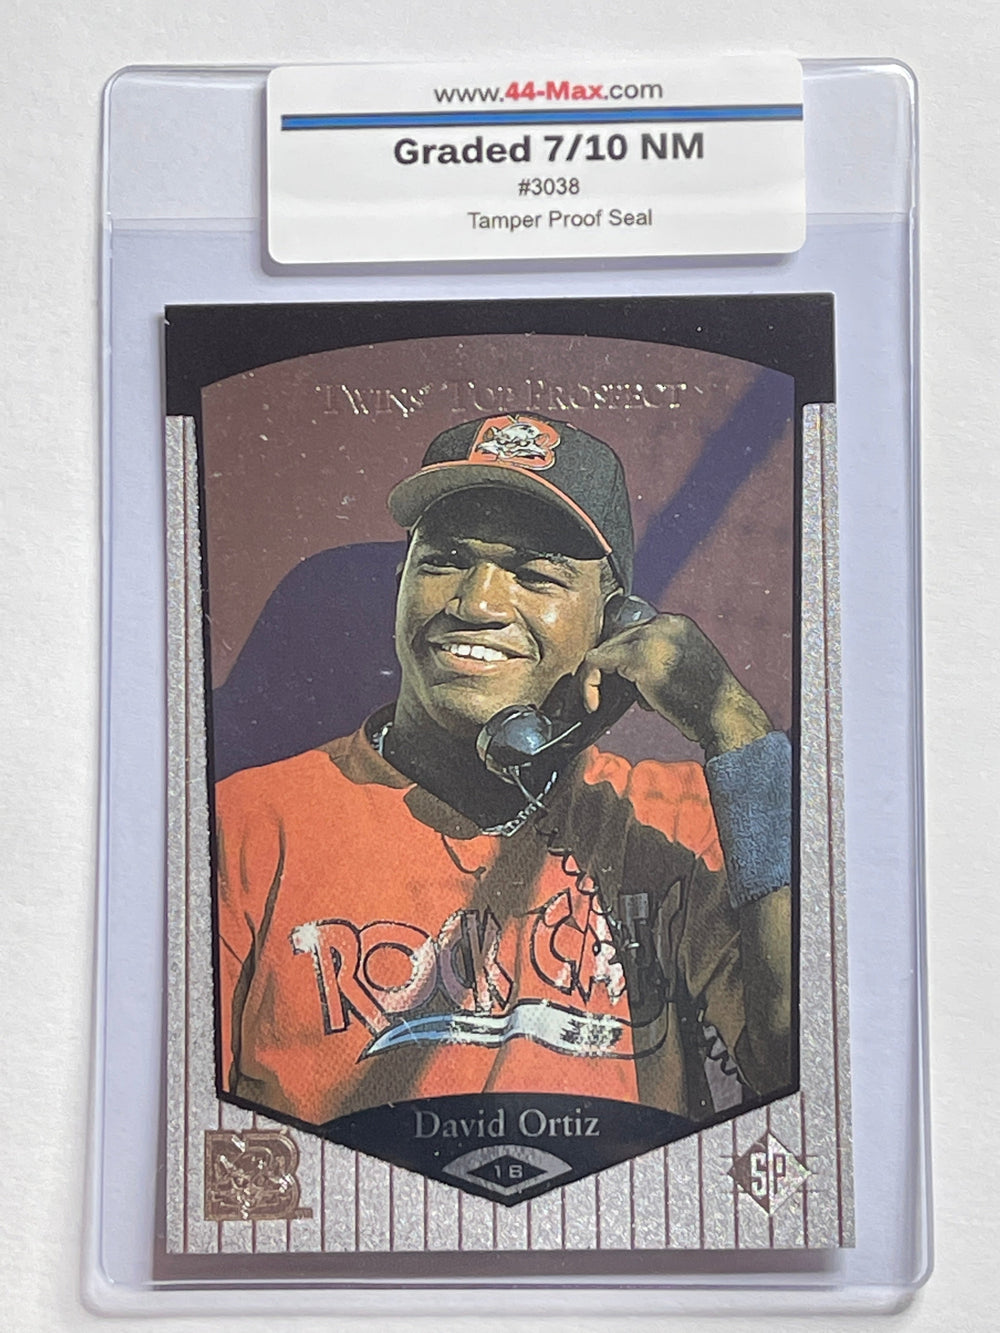 David Ortiz 1998 UD SP Baseball RC Card. 44-Max 7/10 NM #3038